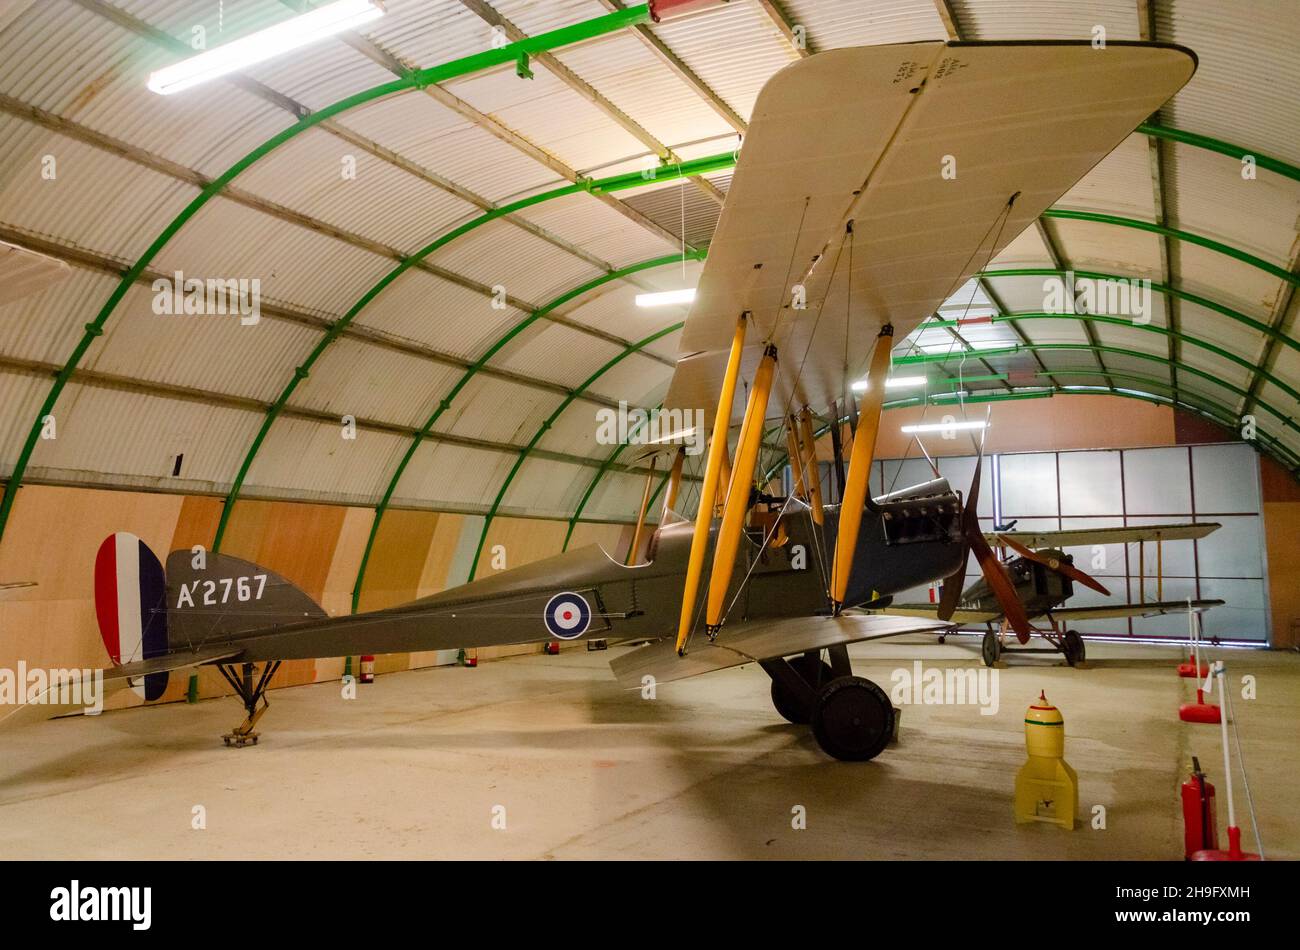 Réplique aérienne de l'avion de chasse de la première Guerre mondiale dans un nouveau hangar sur l'aérodrome historique de Stow Maries.Royal Aircraft Factory B.E.2 Banque D'Images